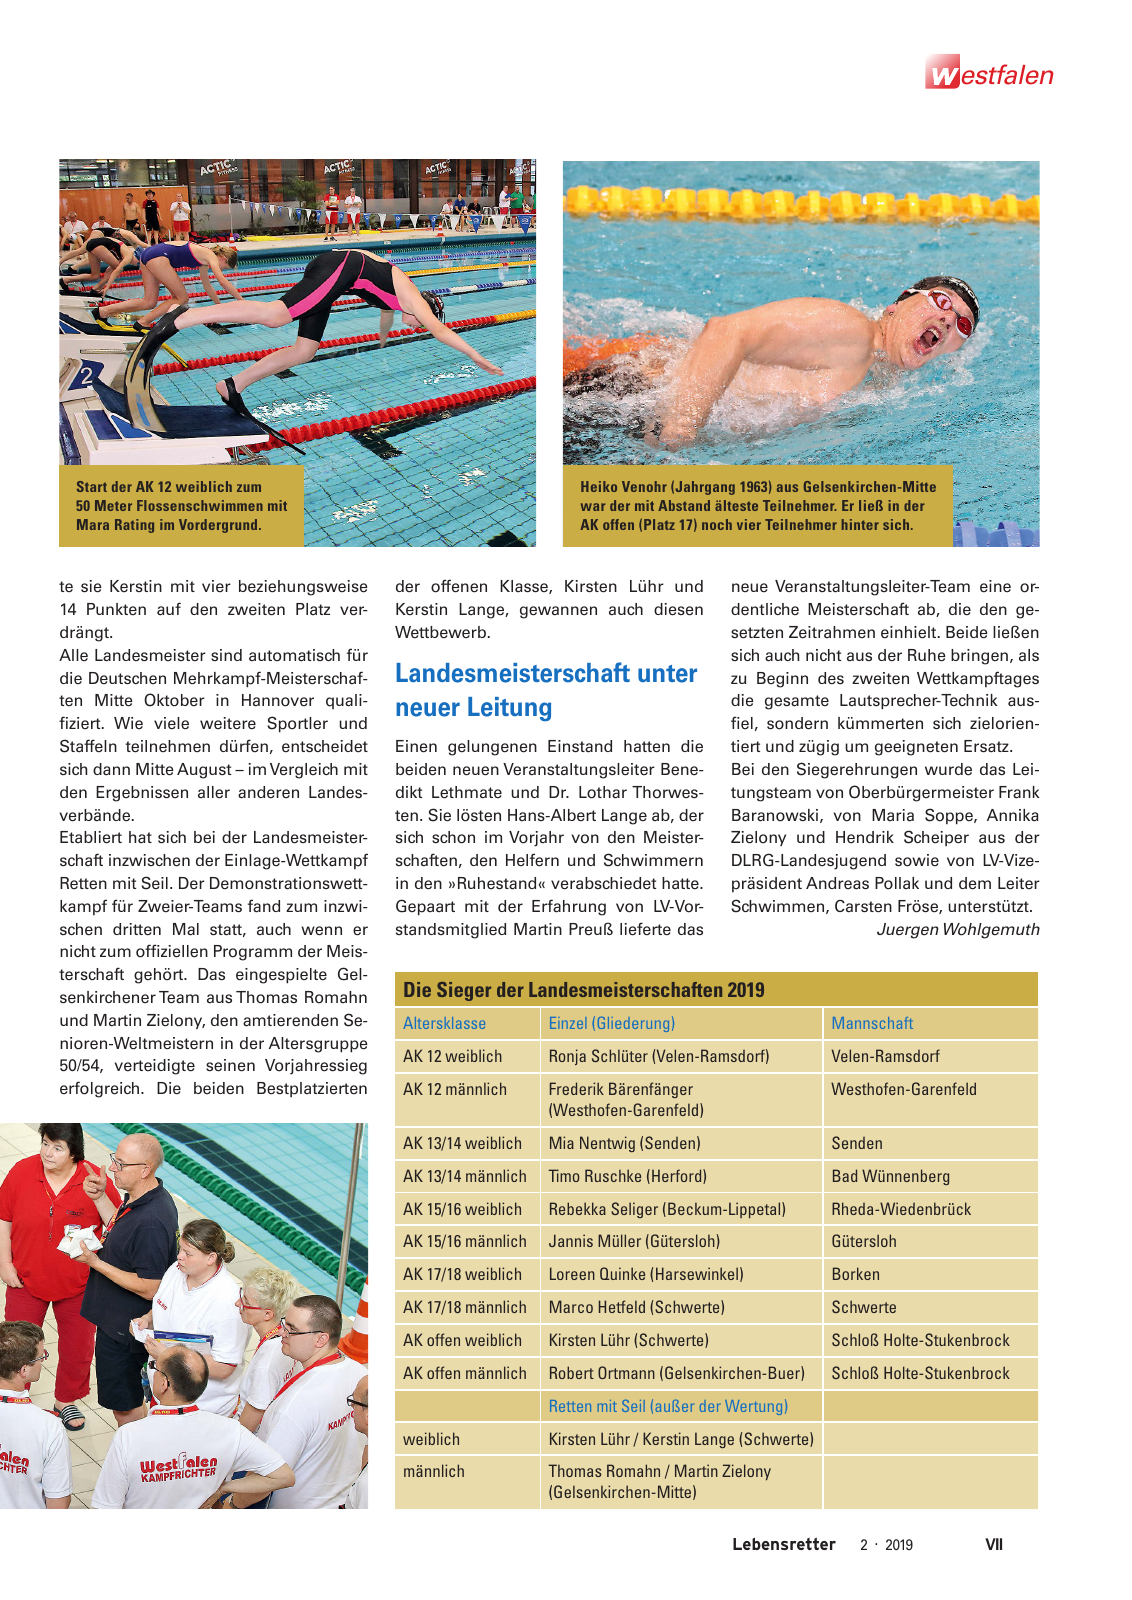 Vorschau Lebensretter 2/2019 - Westfalen Regionalausgabe Seite 9